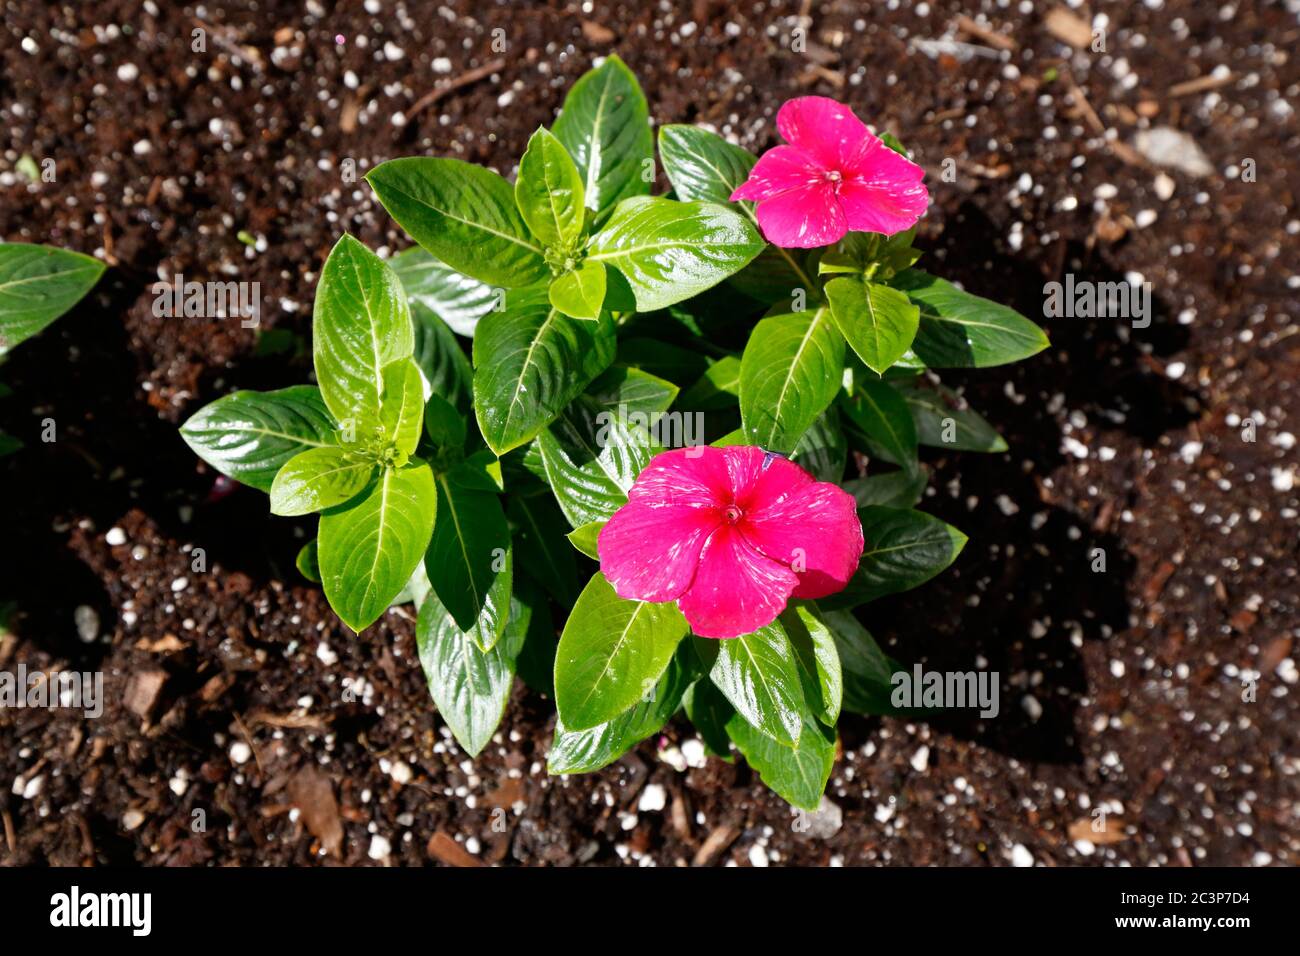 Vinca rosea catharanthus roseus periwinkle  Fotos und ...